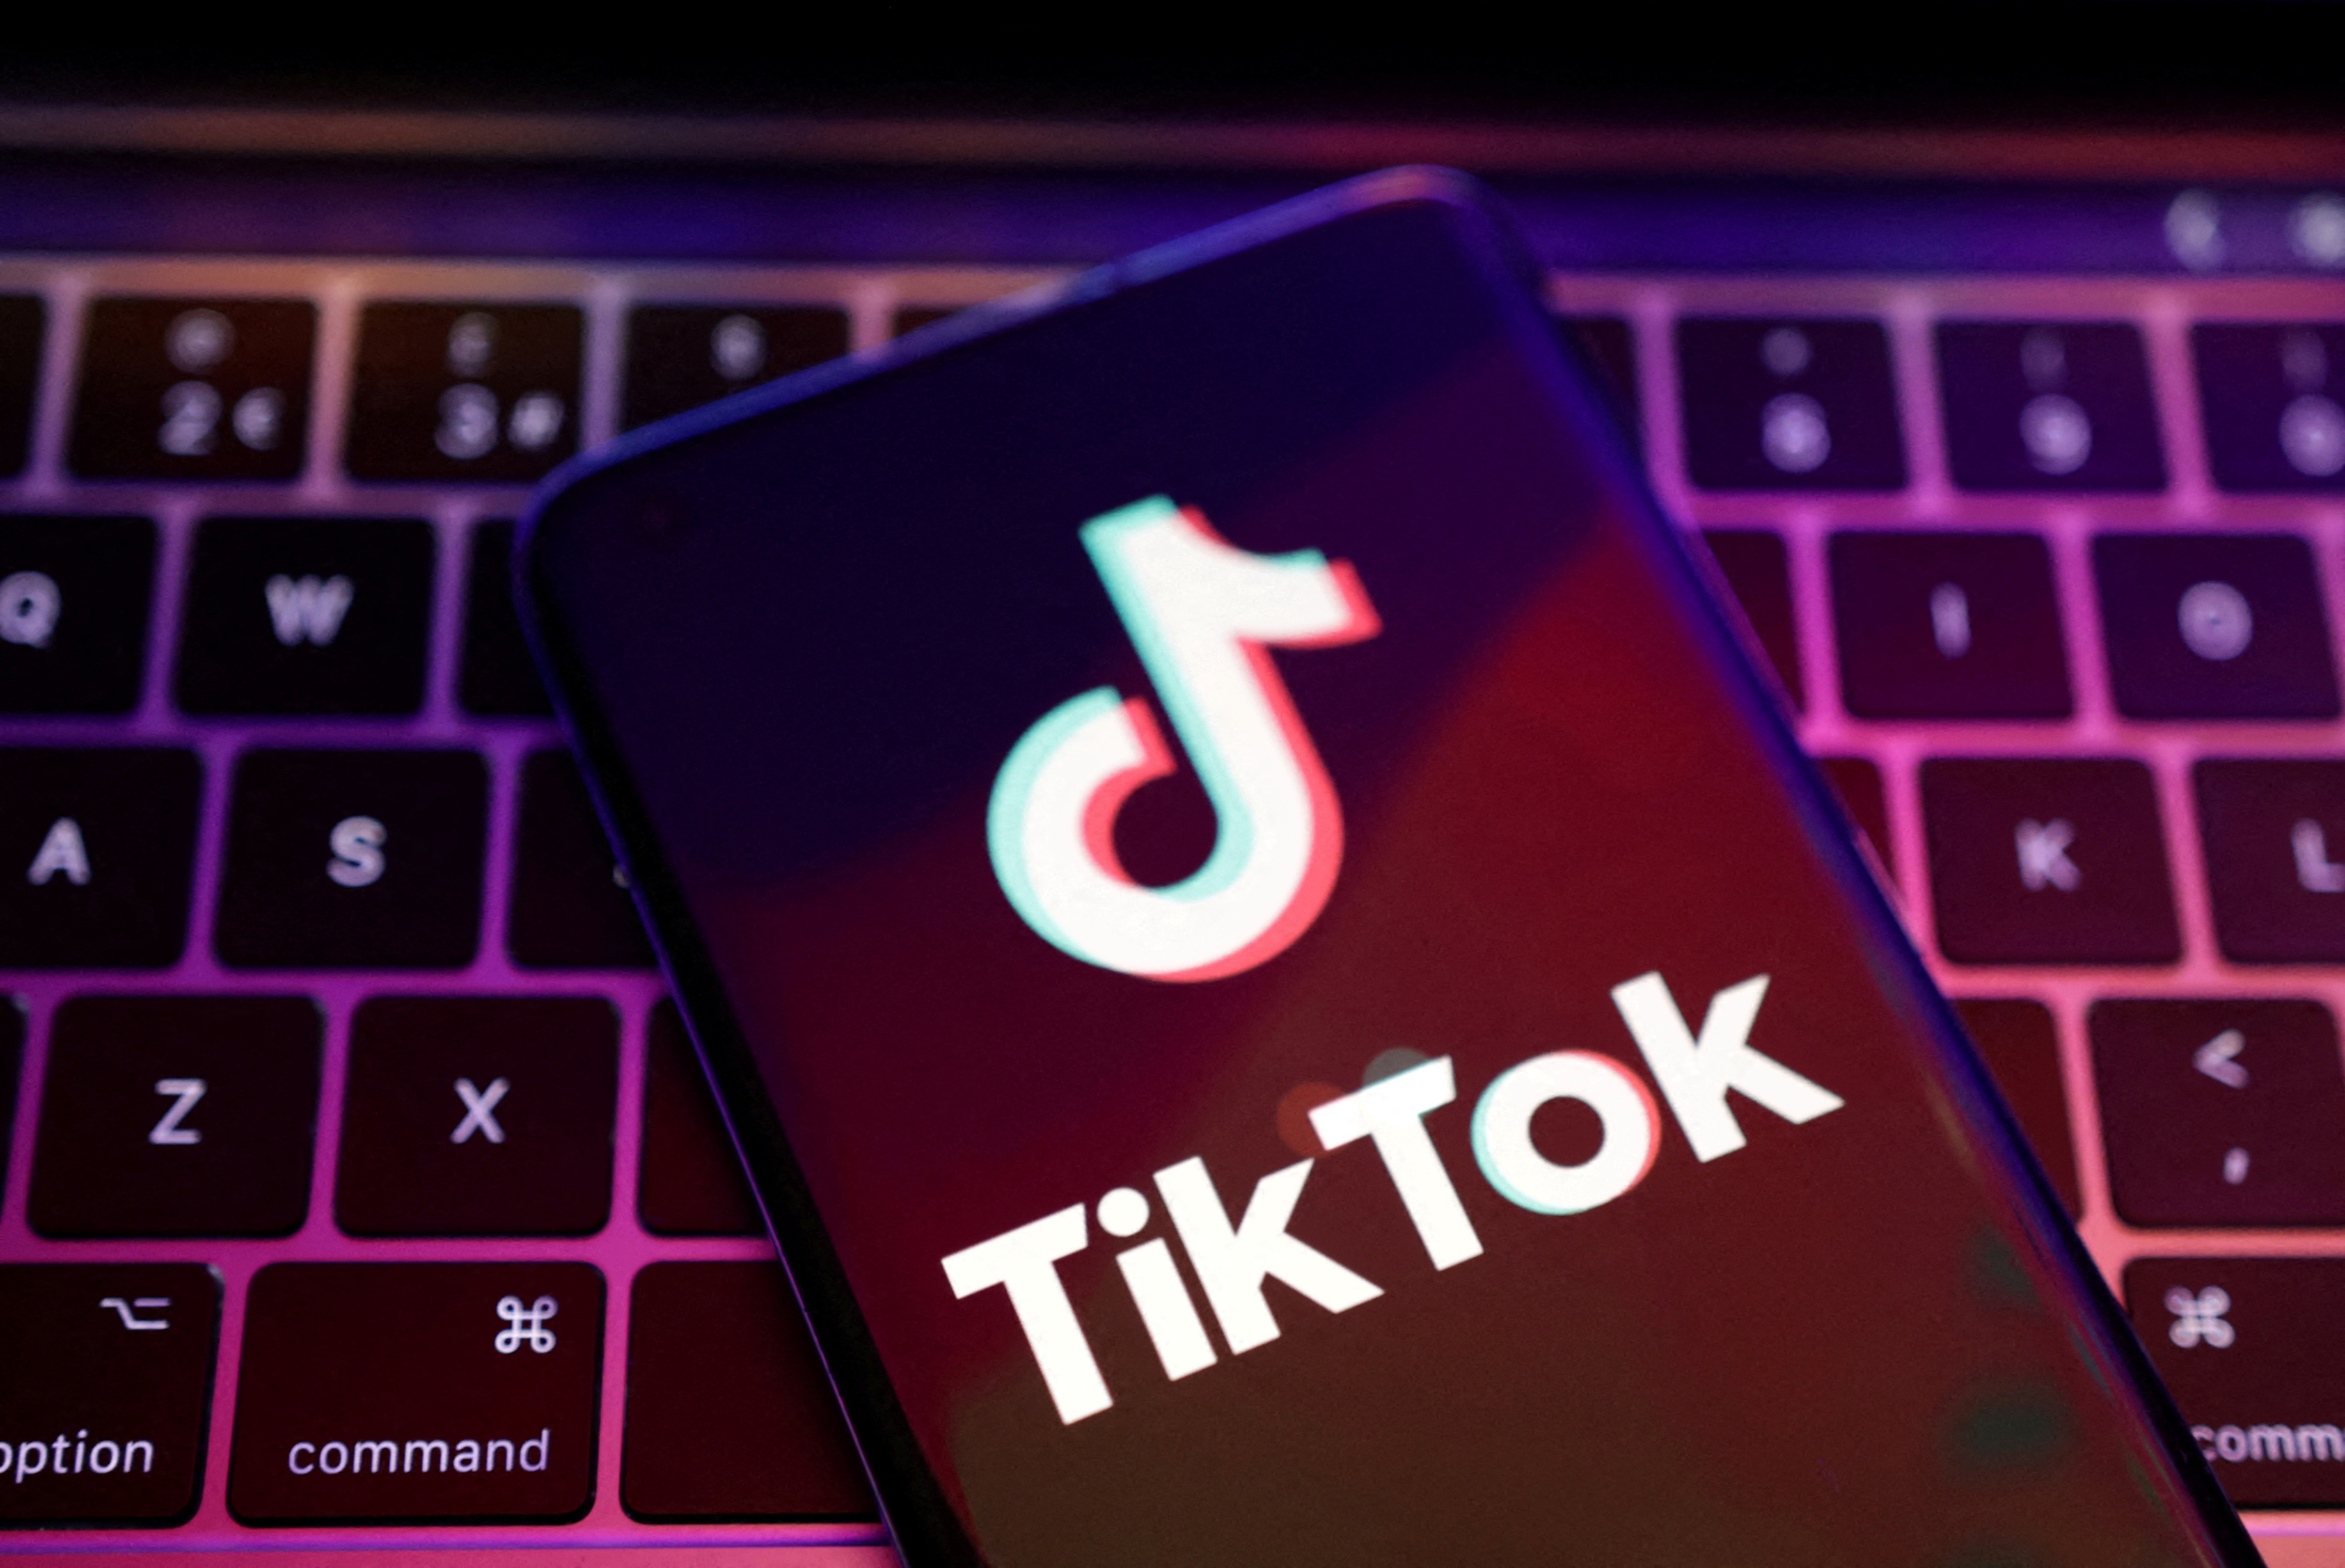 La Universidad de Florida instó a sus estudiantes a que dejen de usar TikTok ante posible espionaje extranjero